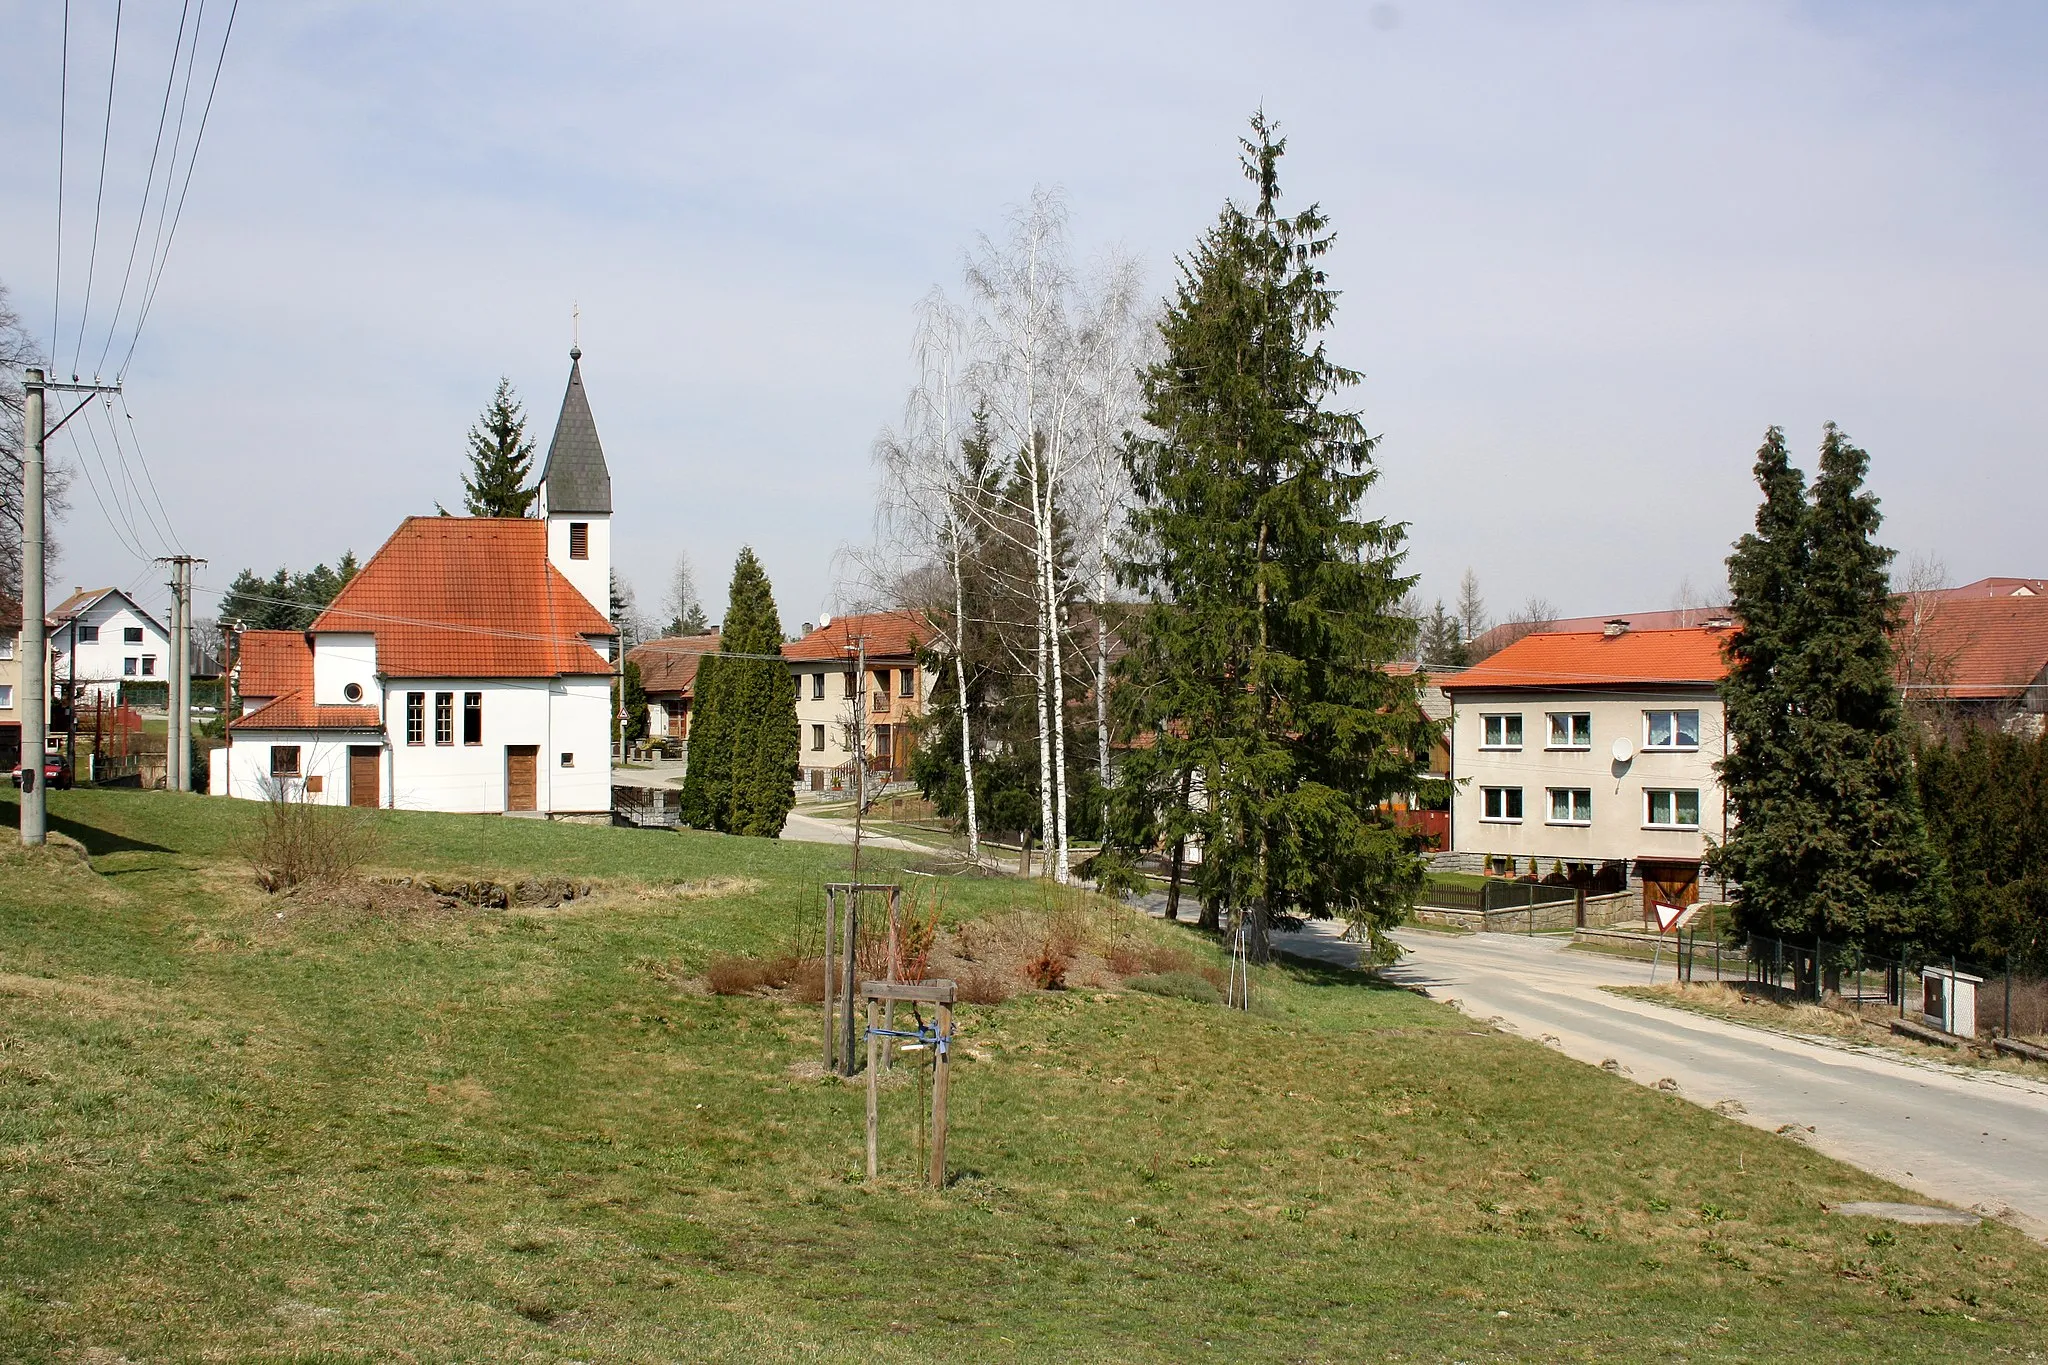 Photo showing: Common in Hrbov, part of Velké Meziříčí